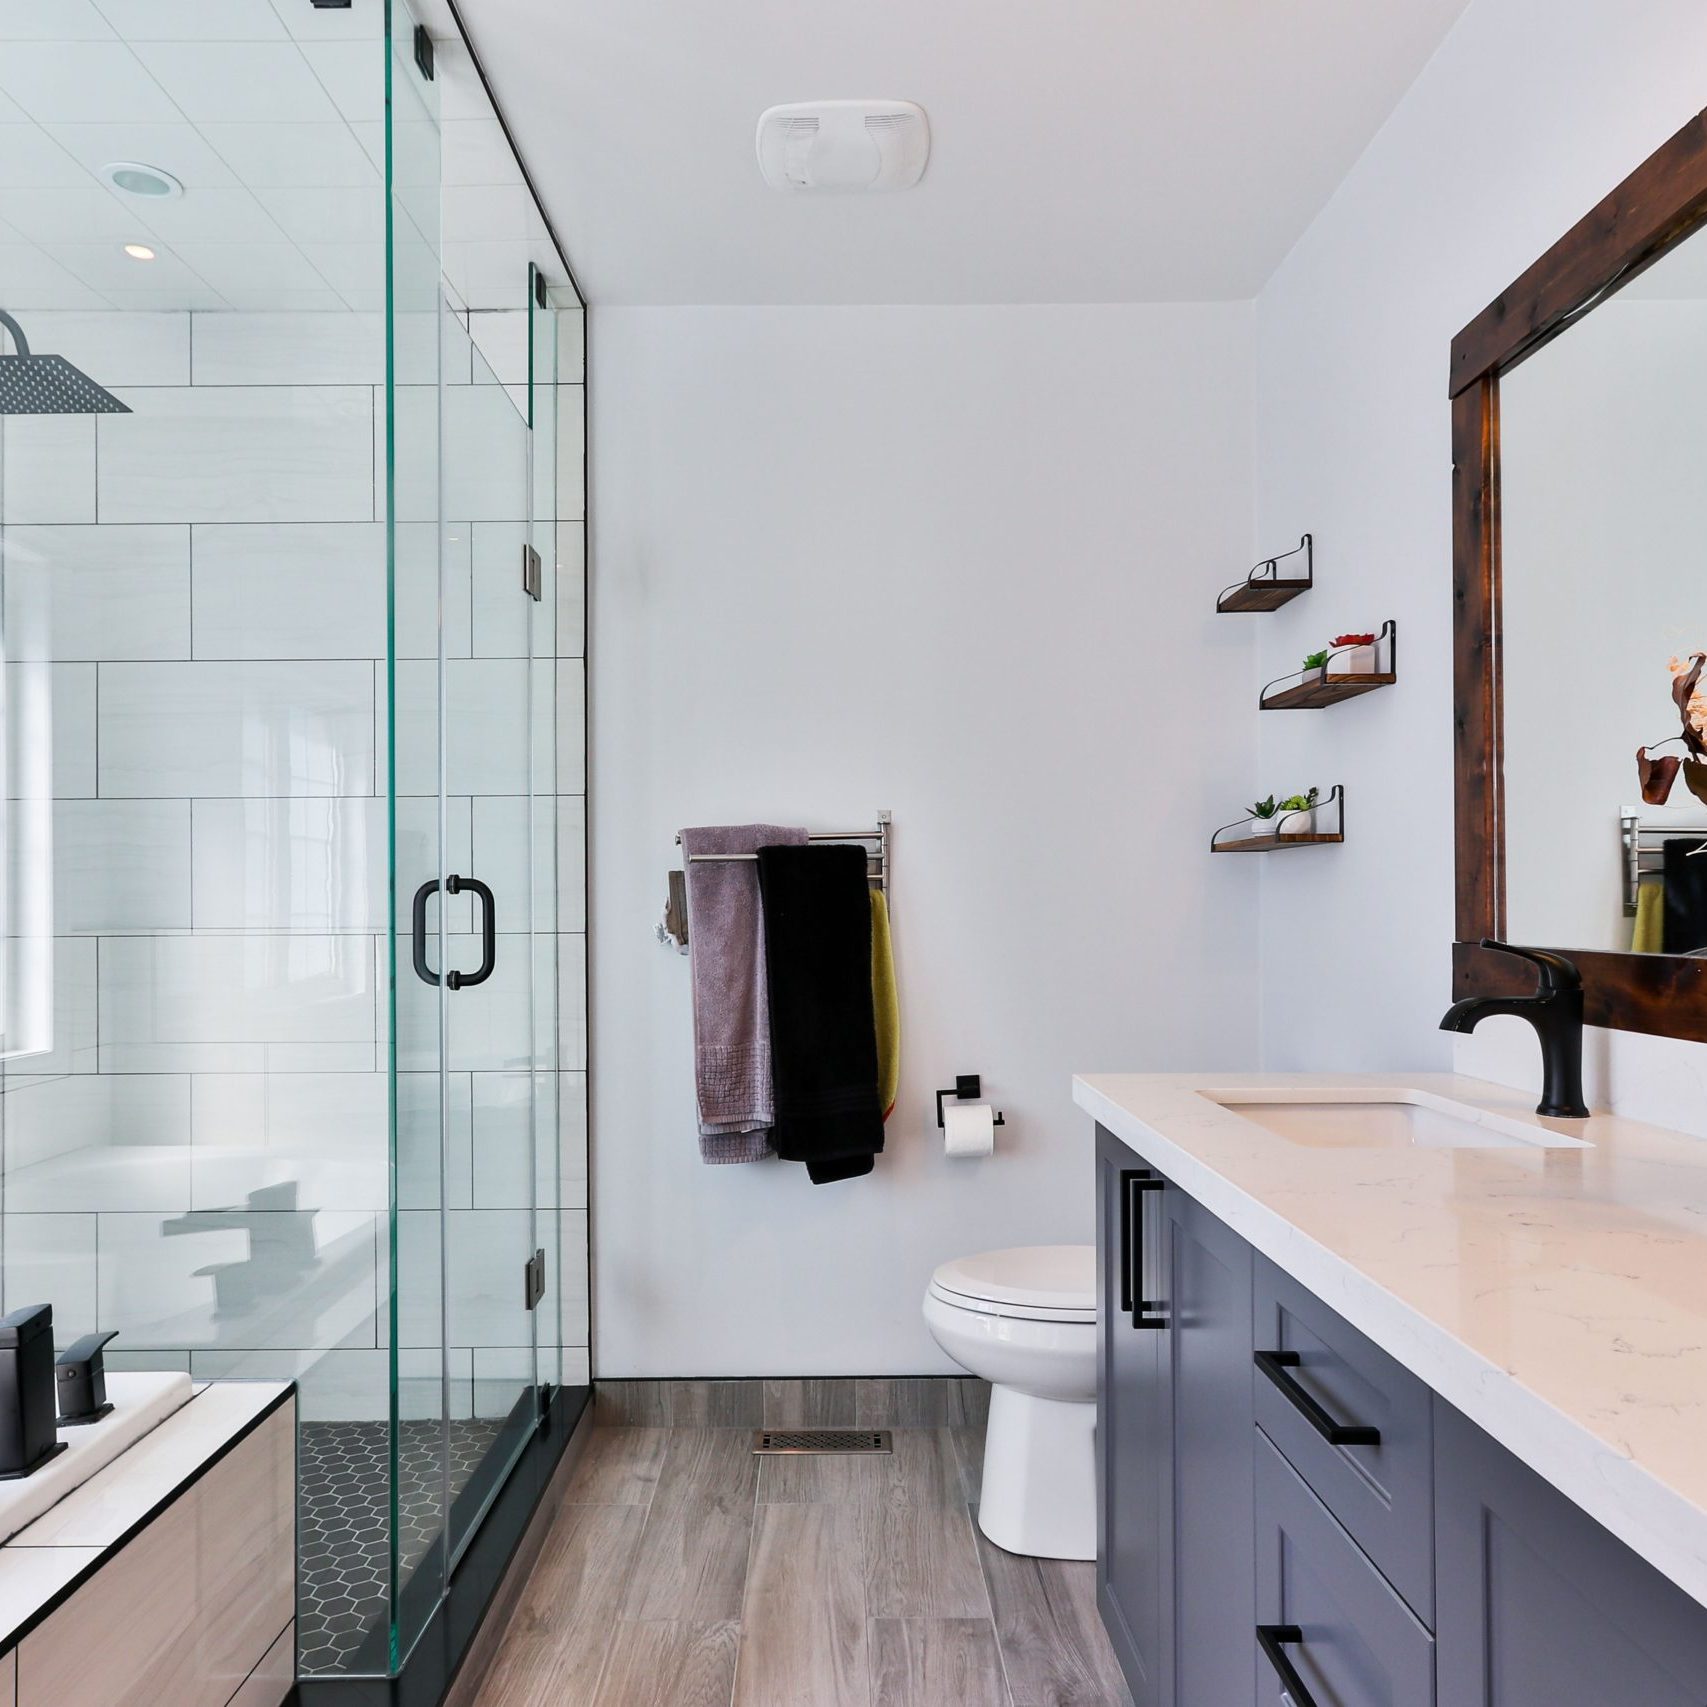 modern bathroom with glass shower, brihgt, open layout